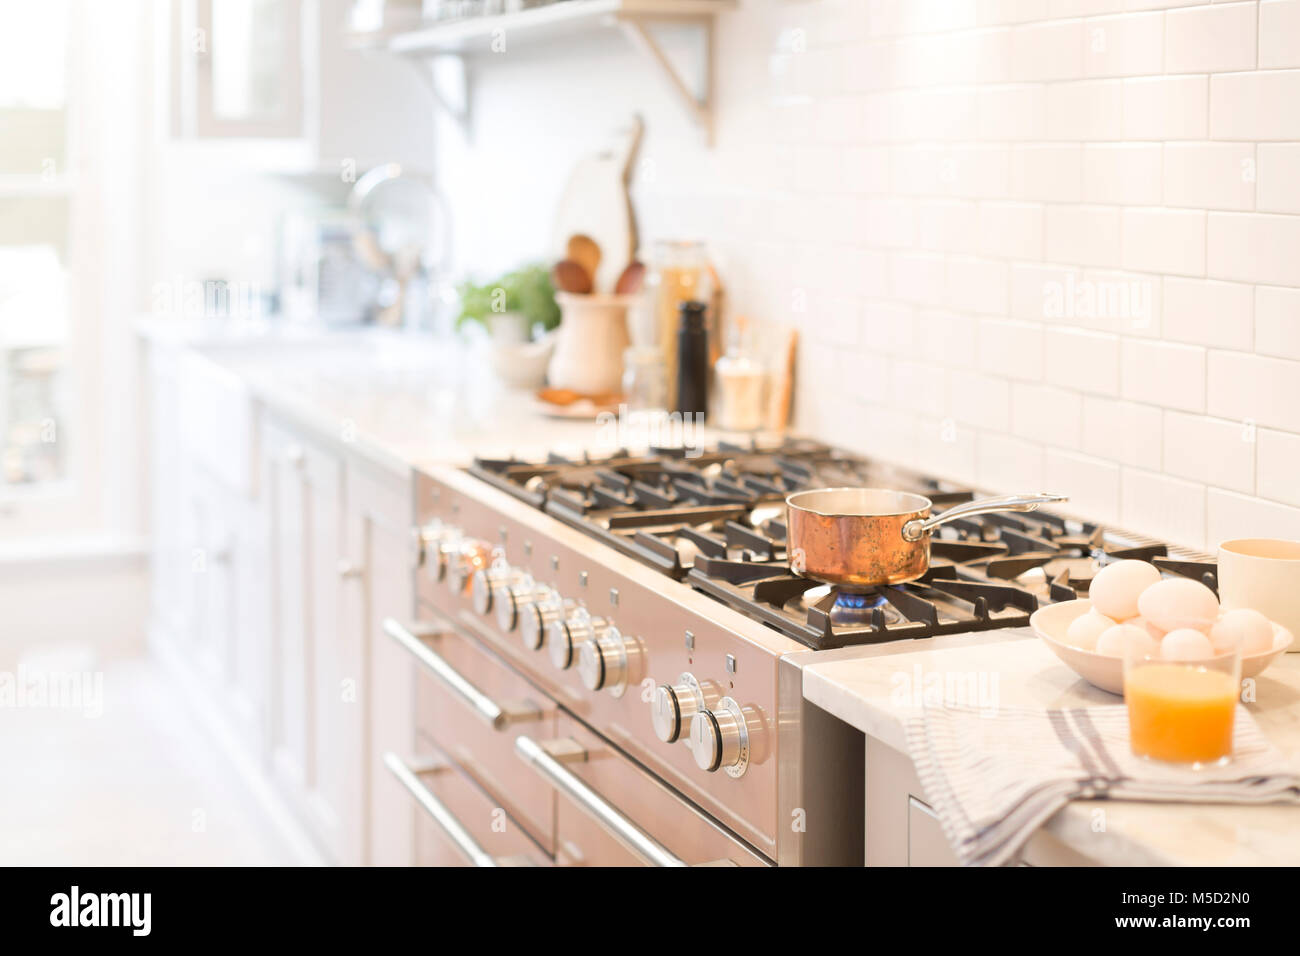 Copper pot on kitchen stove Stock Photo